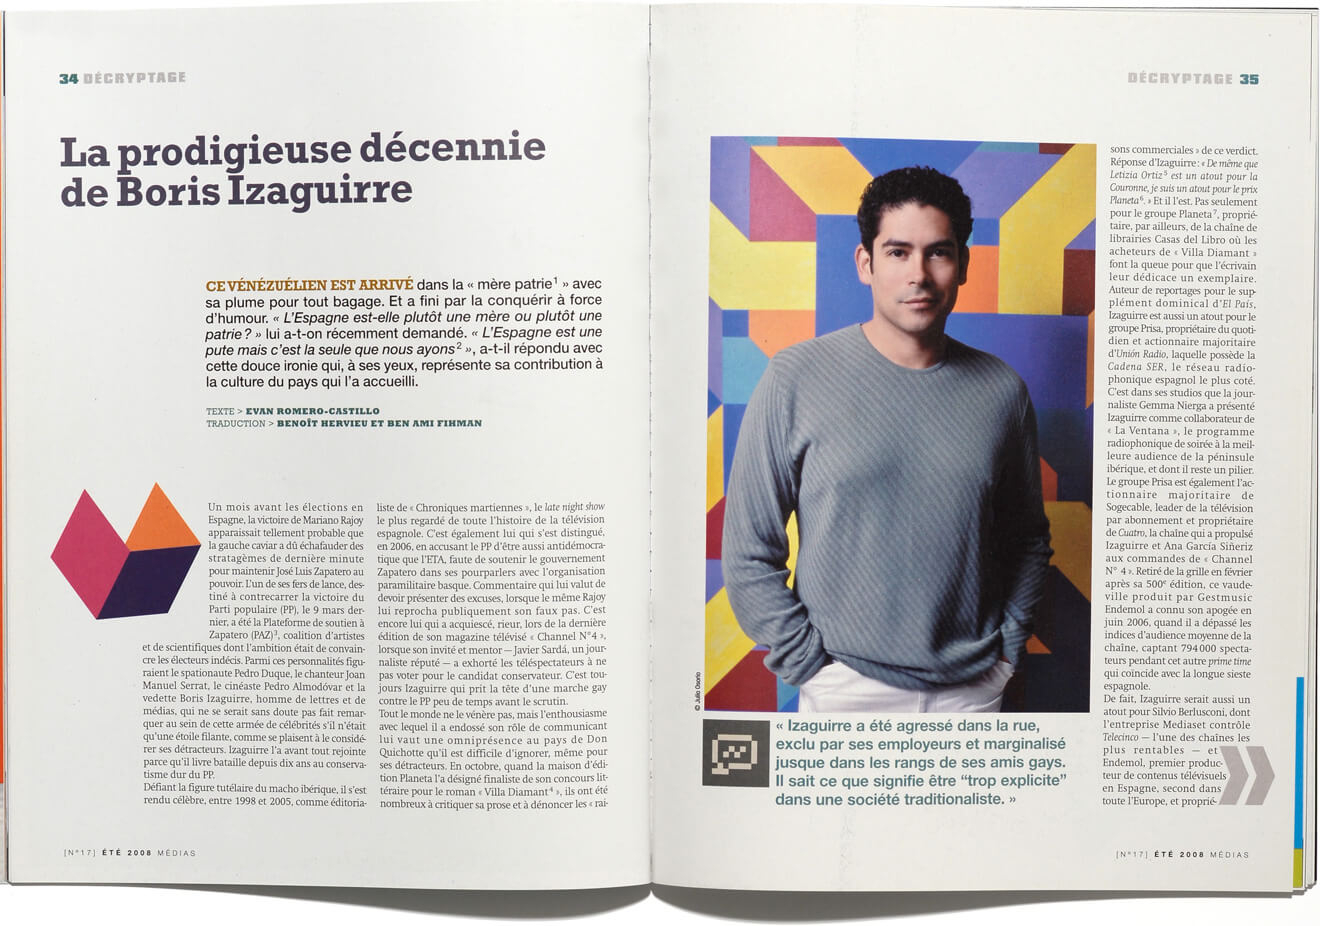 Boris Izaguirre en la revista francesa “Médias”